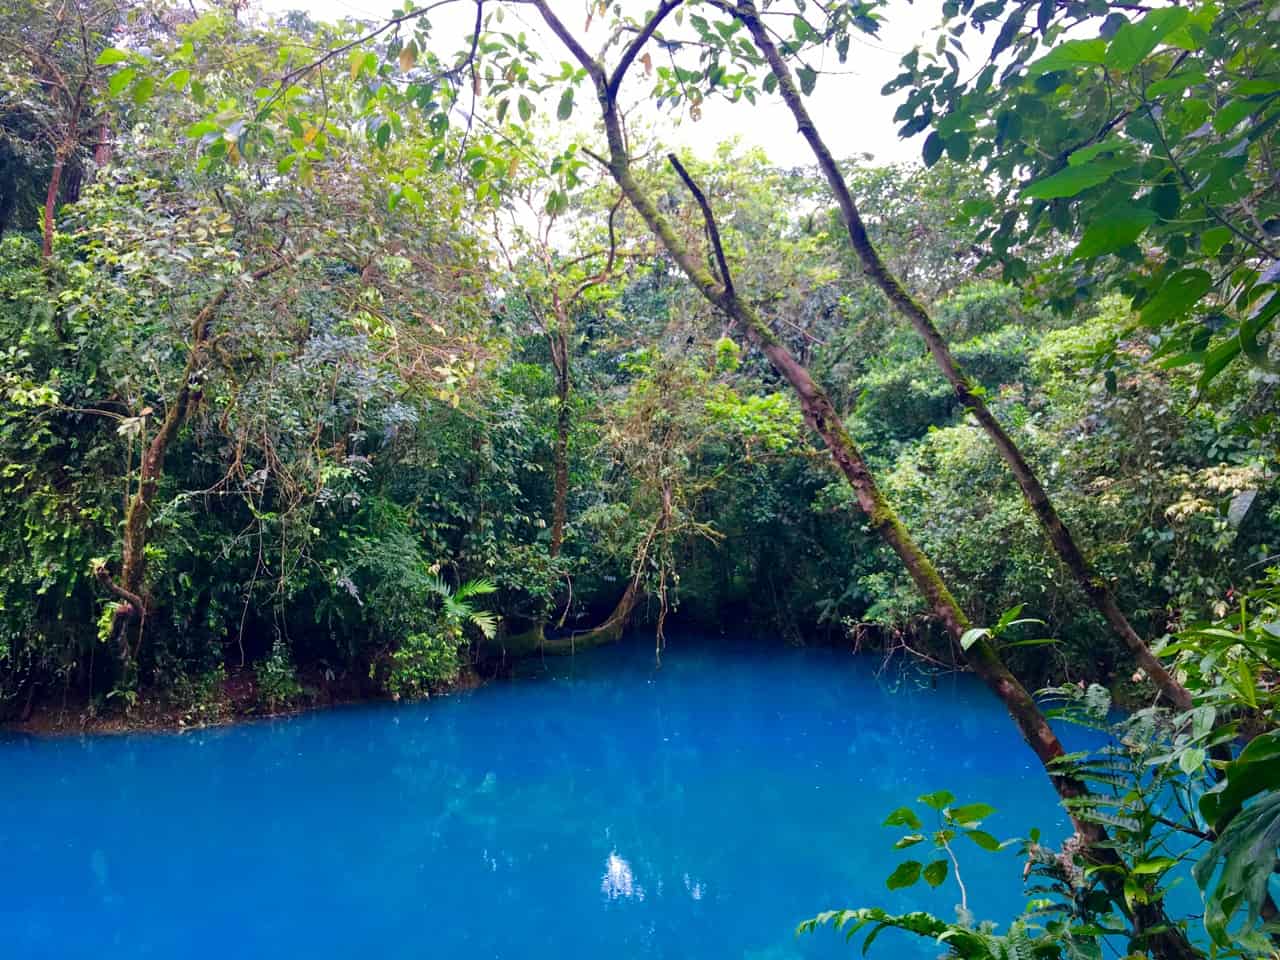  Pozo Azul dans le parc national de Tenorio est un bleu ciel vif dû aux minéraux. 